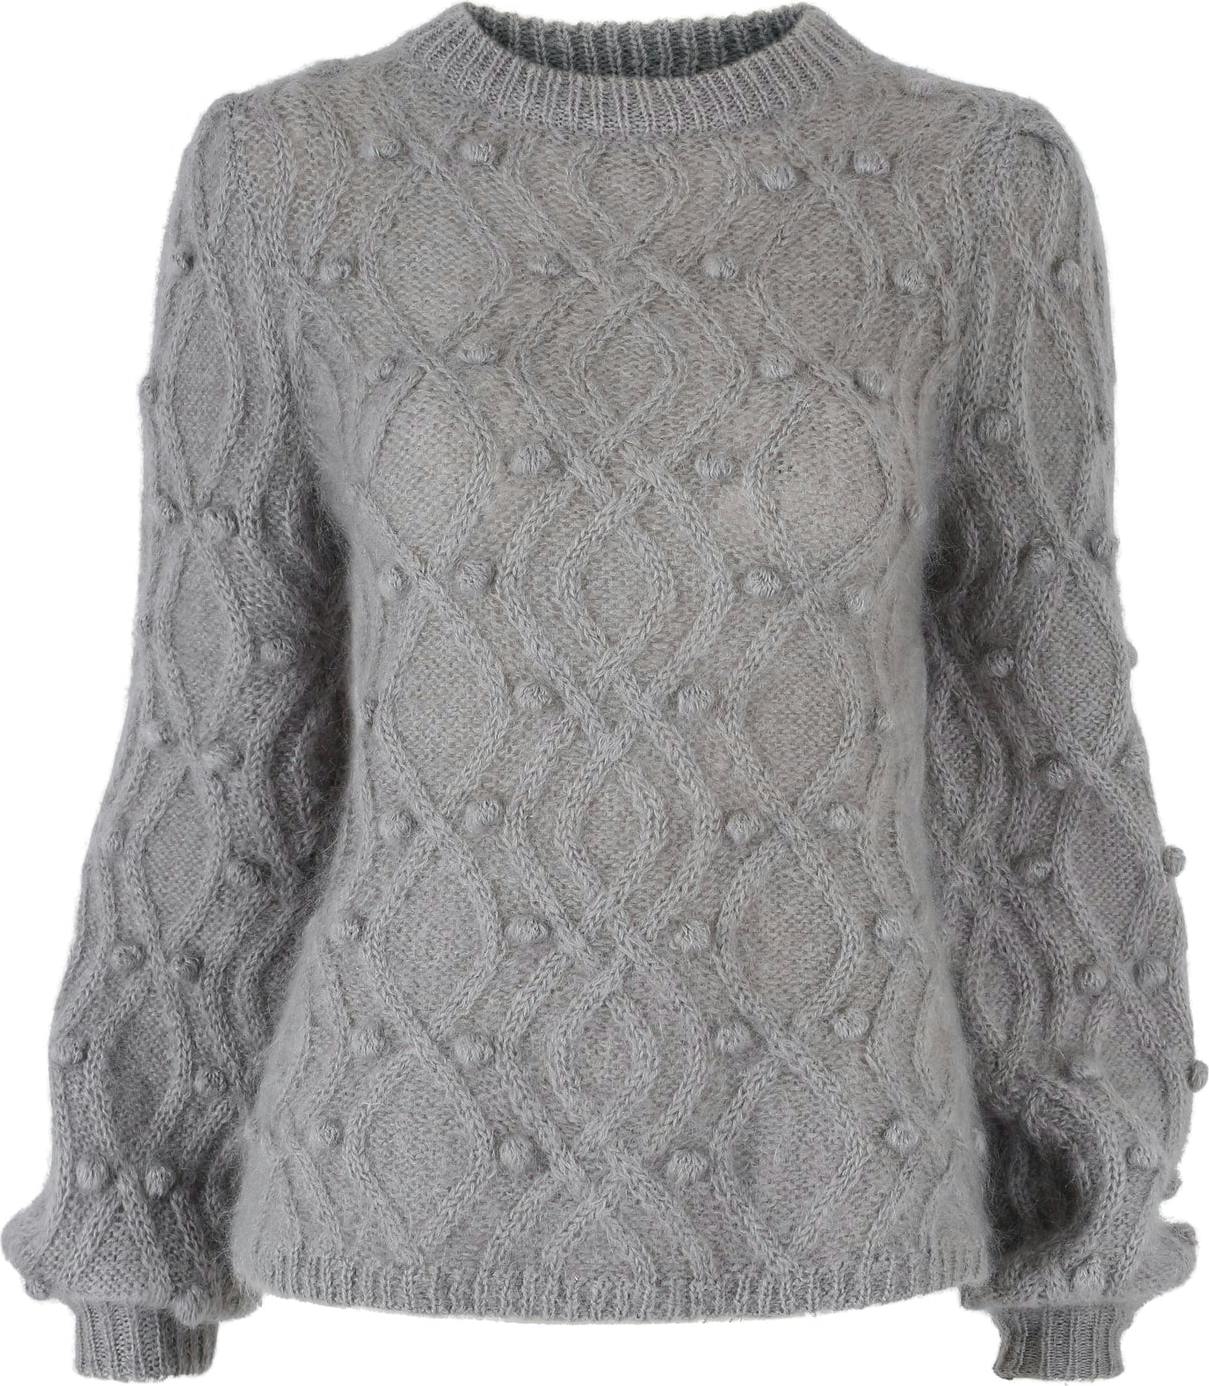 Andrea Chunky Knit Sweater - Grey - Ella & il - Gensere - VILLOID.no